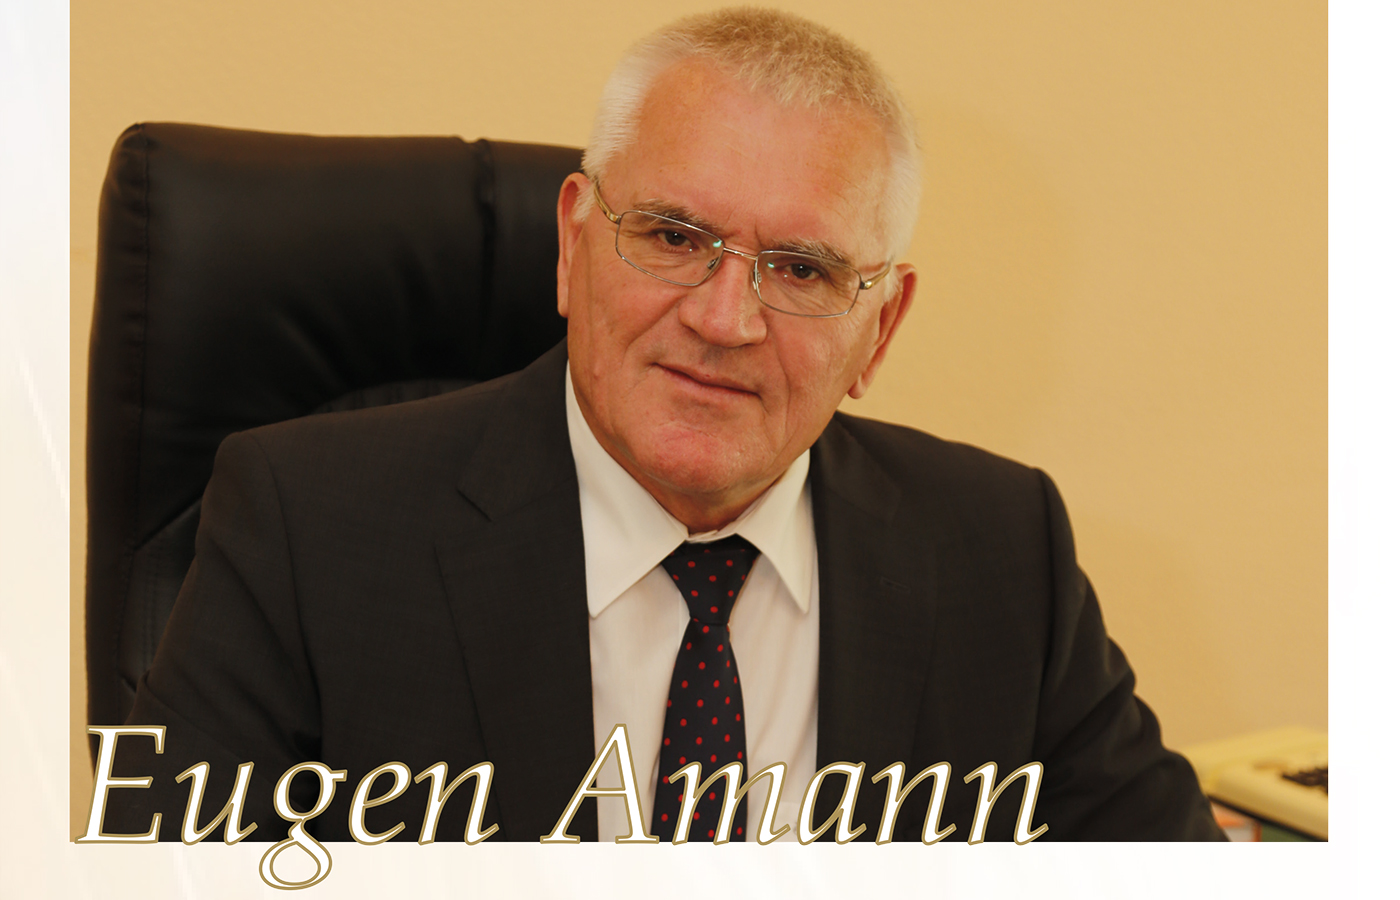 Eugen Amann